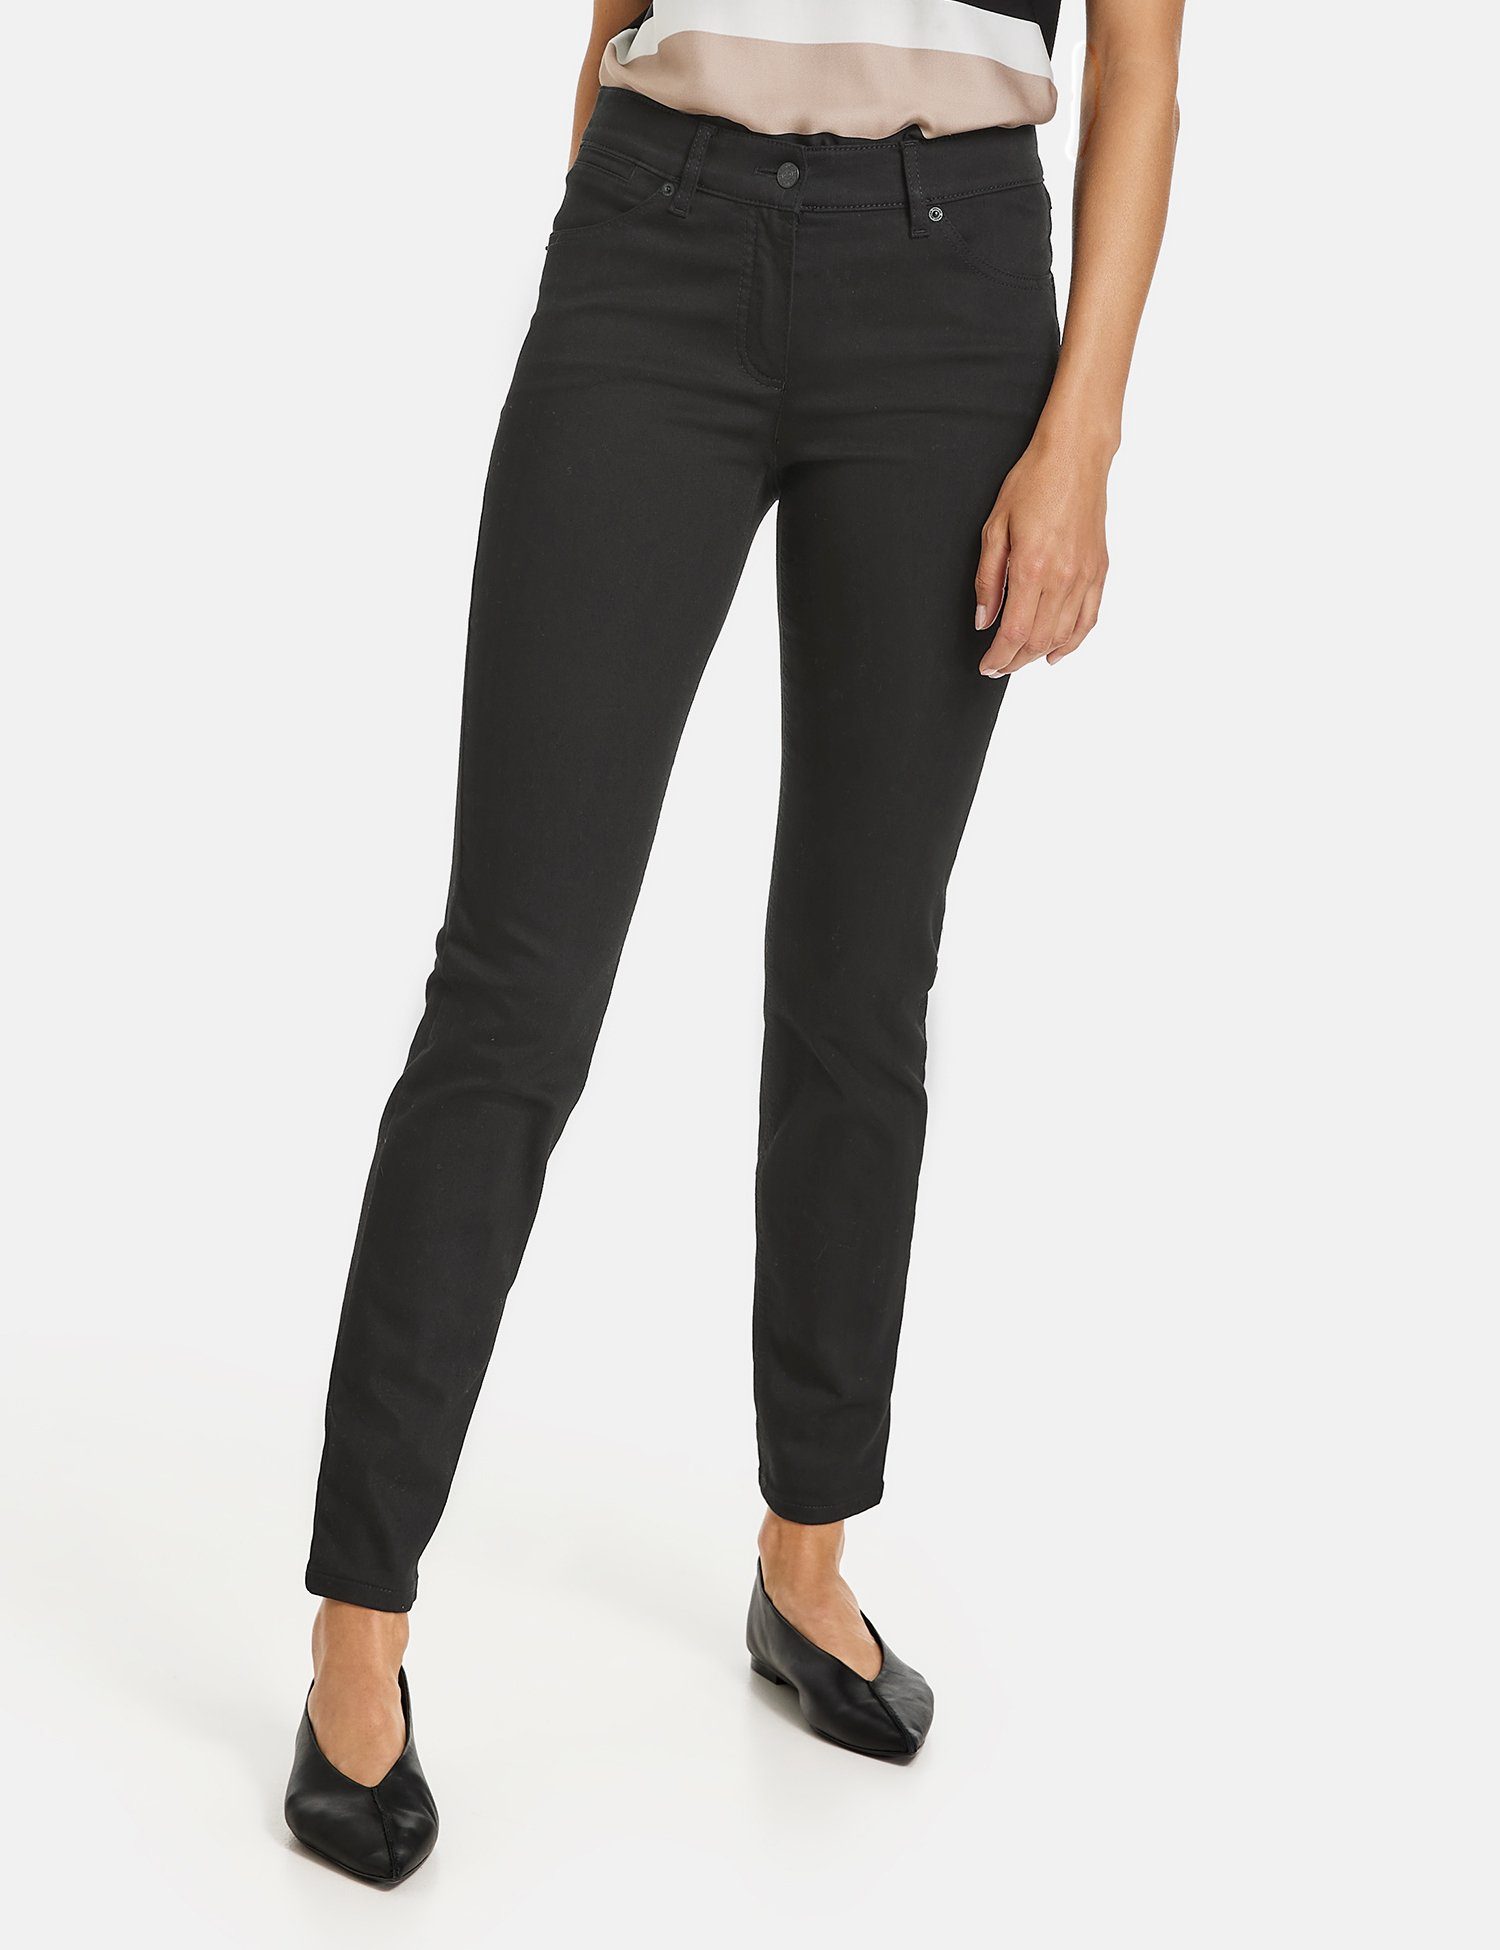 Denim WEBER Skinny Stretch-Jeans GERRY Black Best4me 5-Pocket Jeans Black